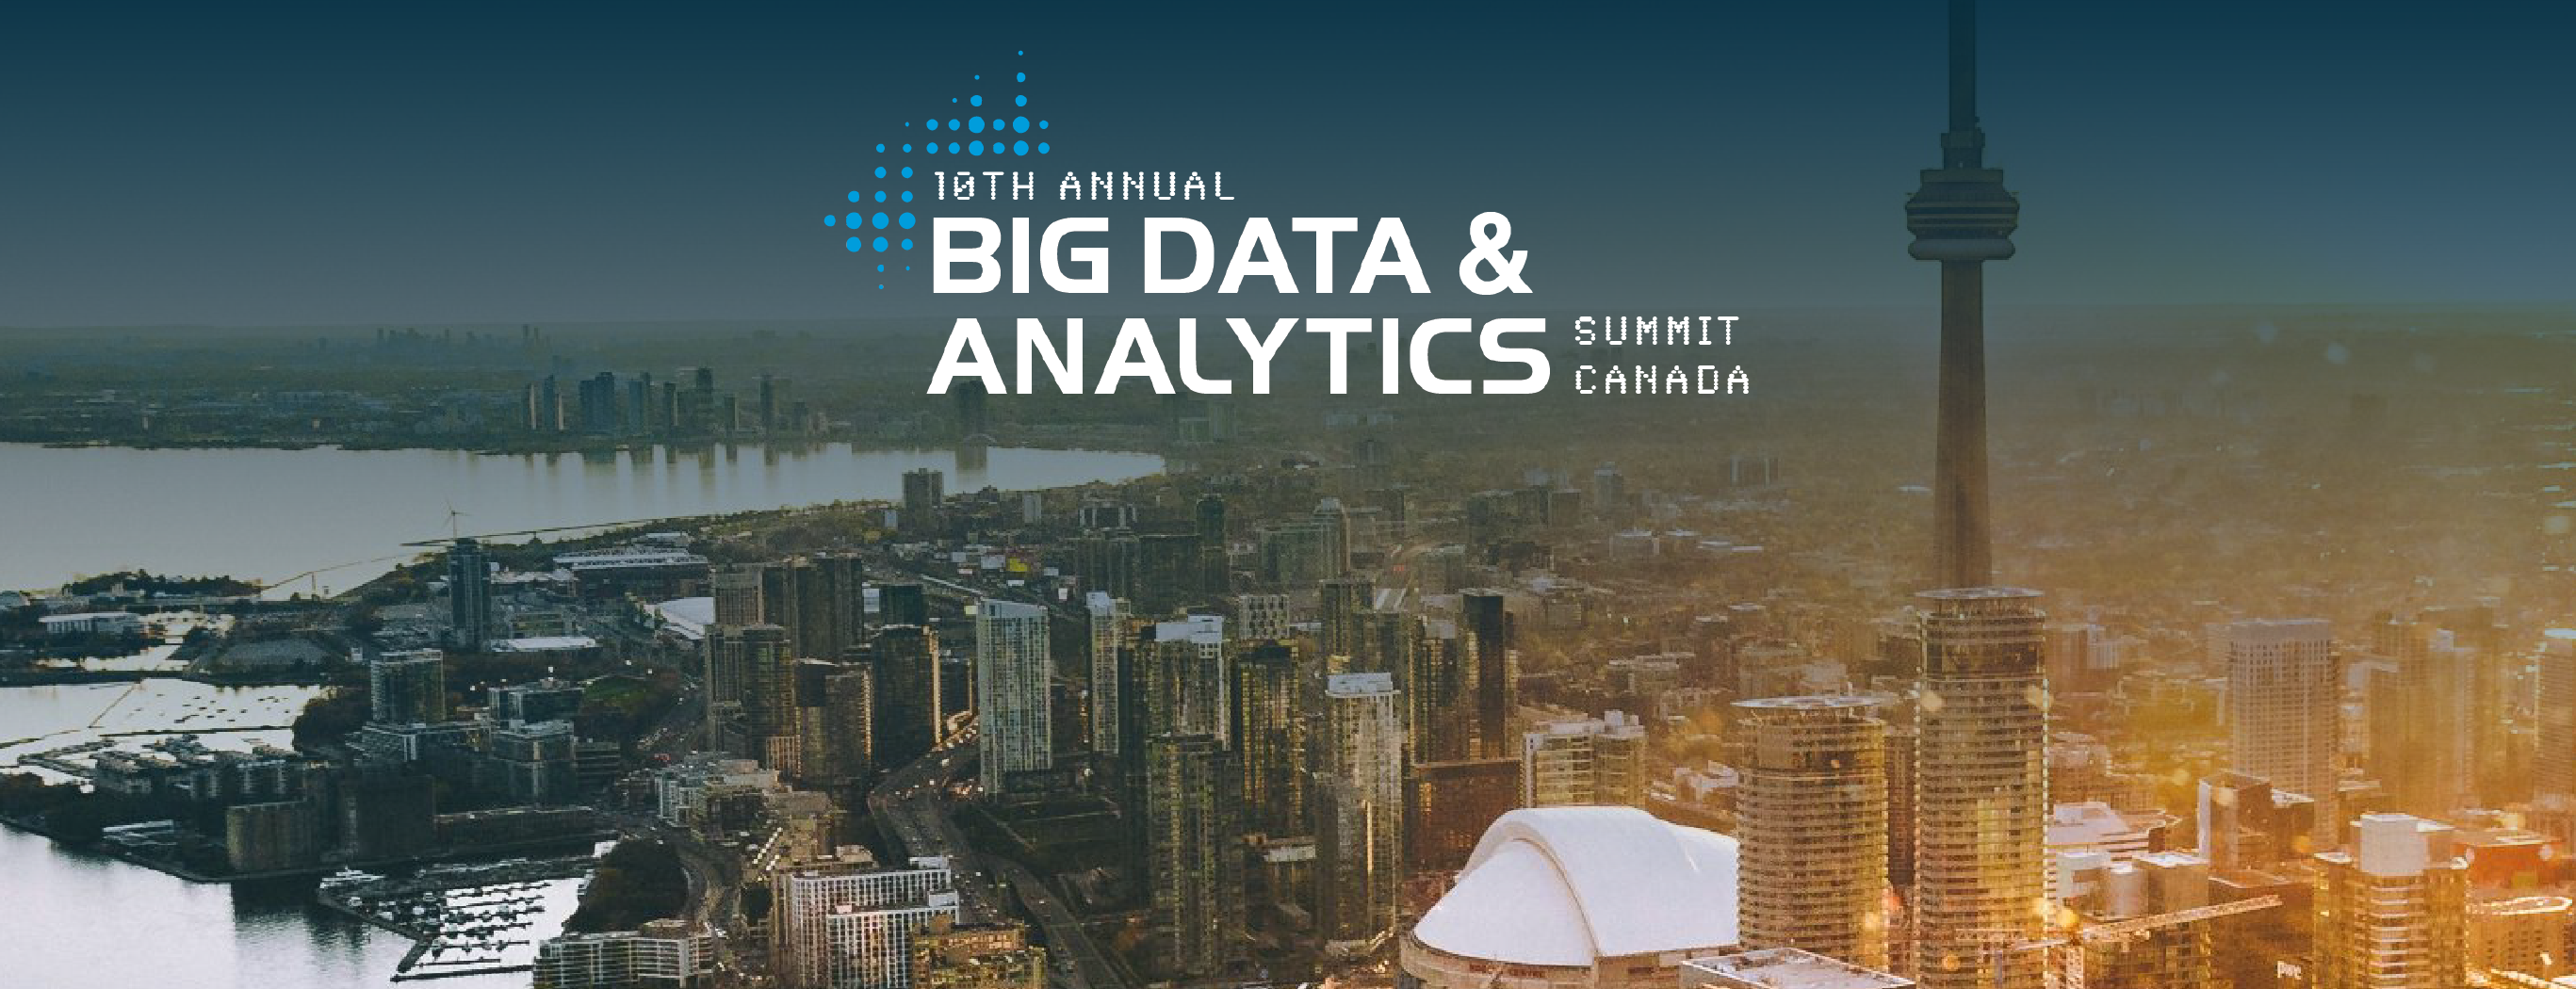 10th ANNUAL big Data & Analytics Summit Canada